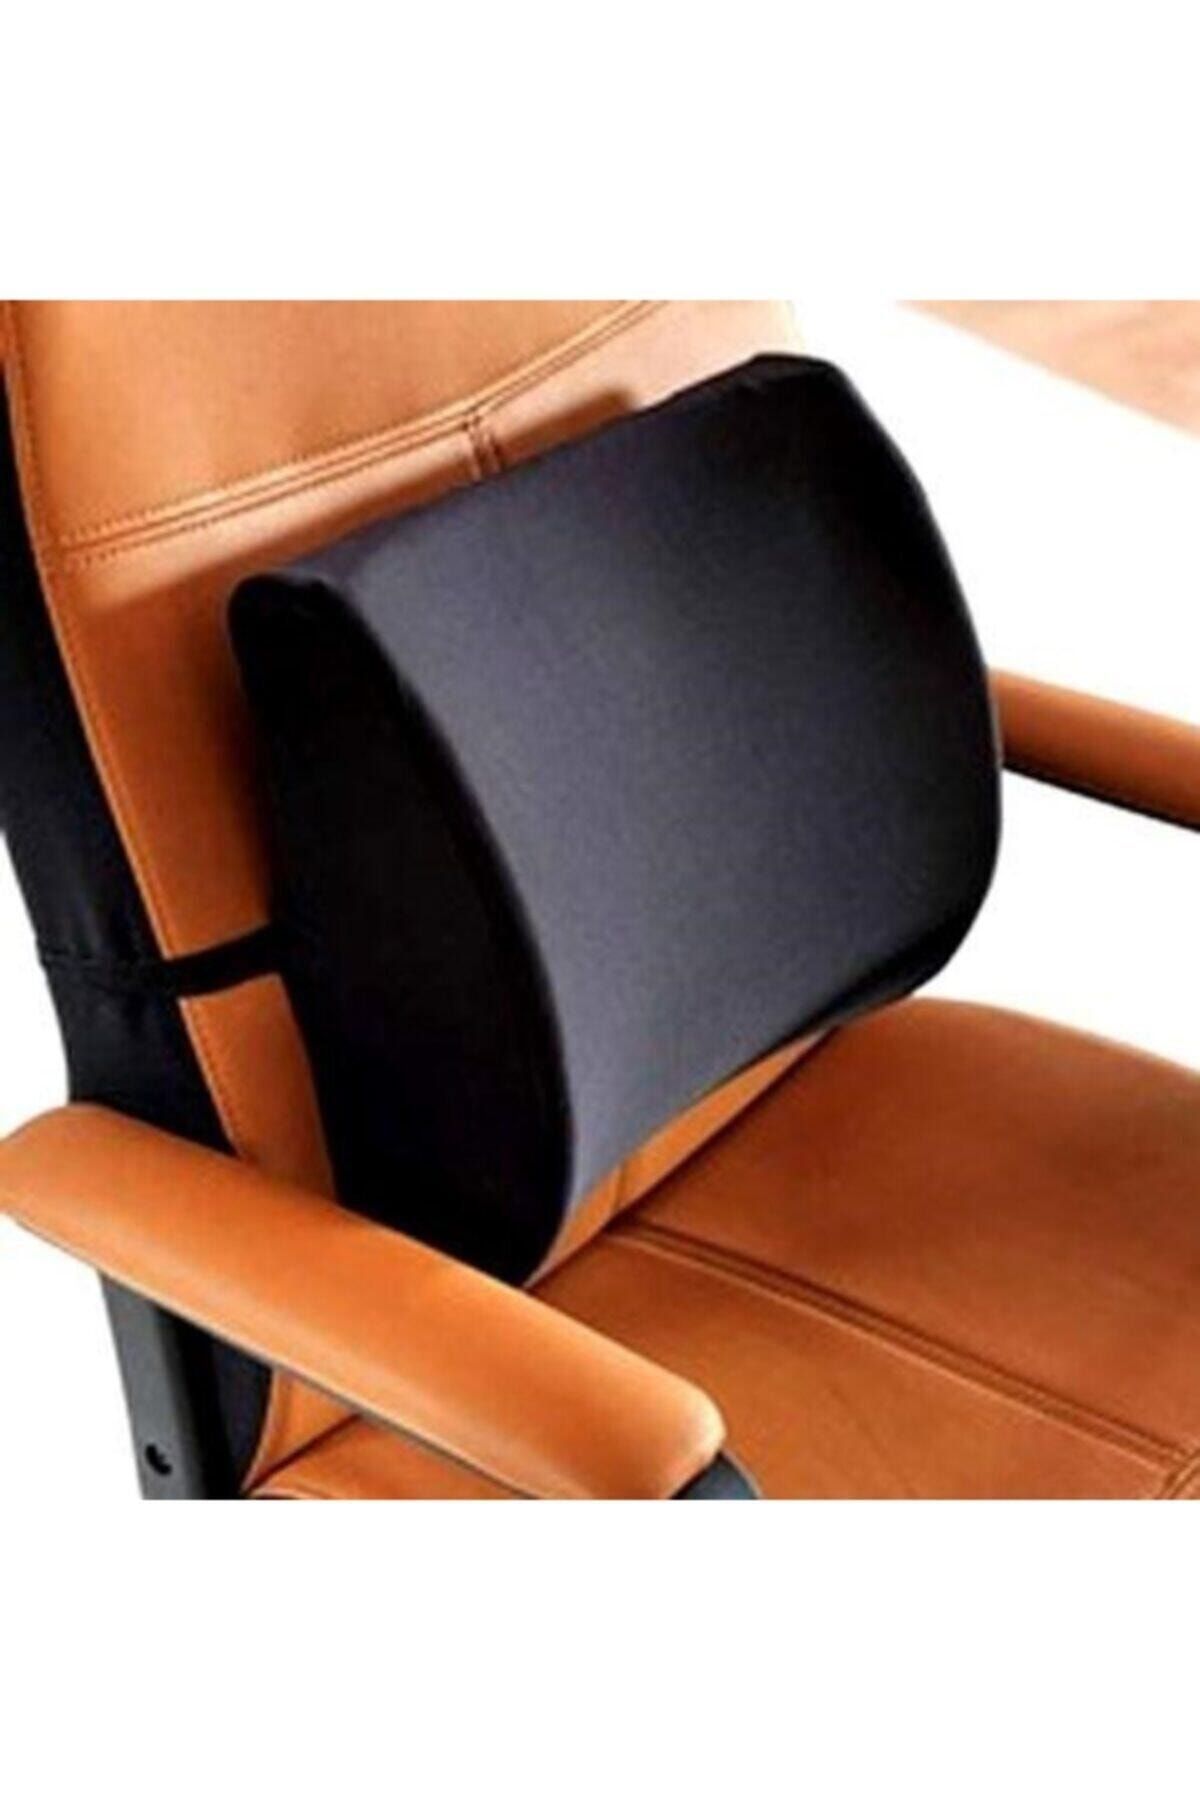 Genel Markalar Unisex Siyah Alf Grup Ortopedik Koltuk Minderi Araç Sandalye Bel Sırt Desteği Bel Dik Duruş Destek